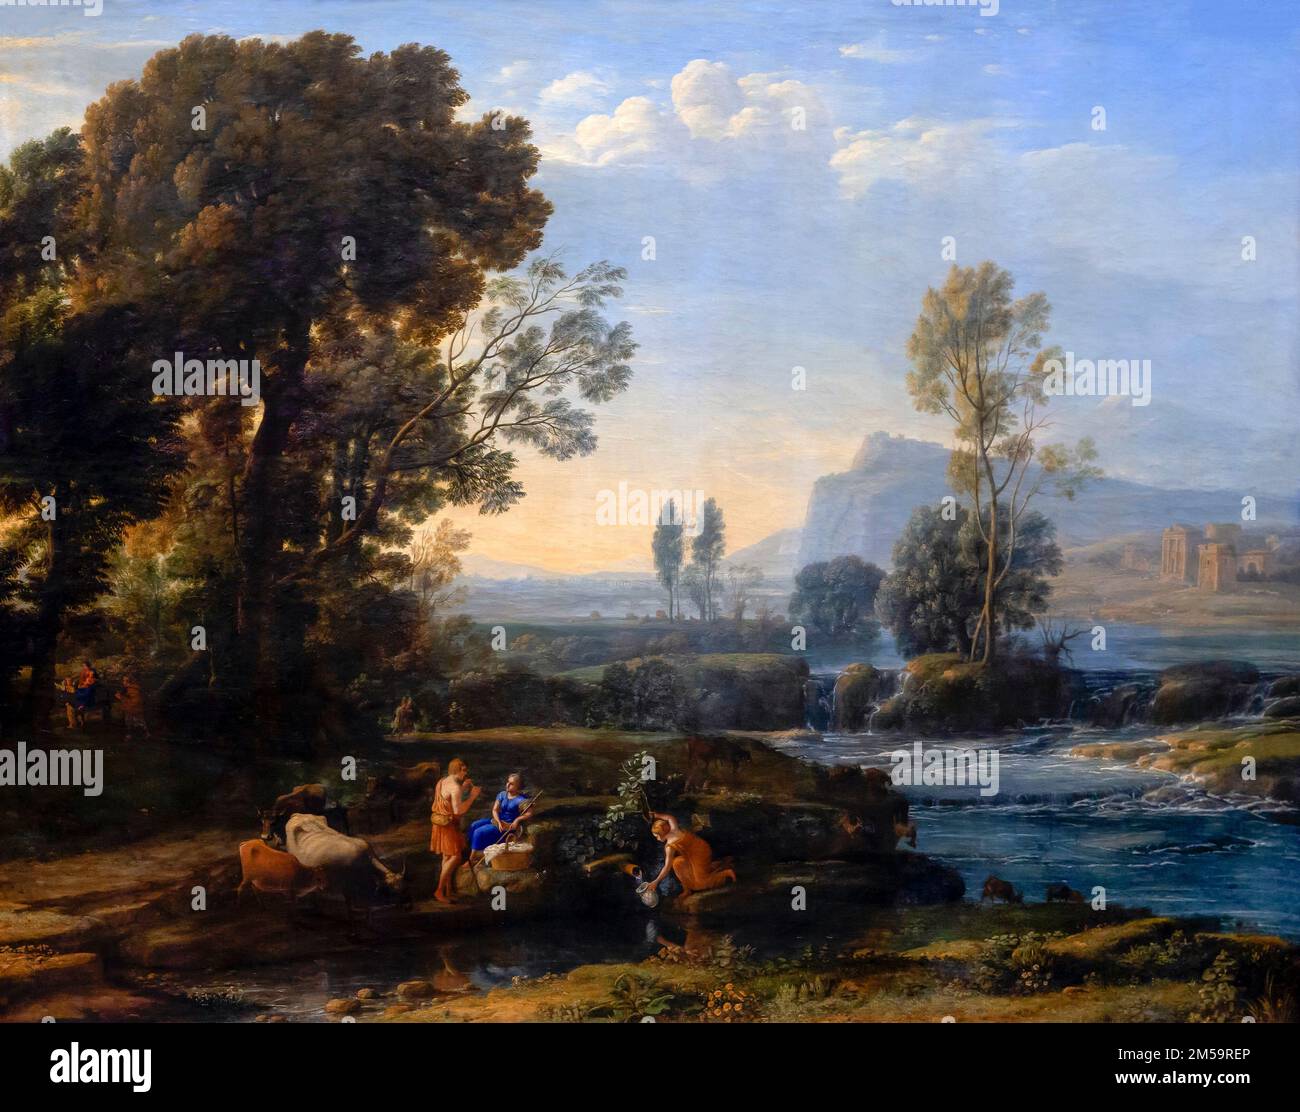 Landschaft mit der Flucht nach Ägypten, Claude Lorrain, 1647, Gemaldegalerie Alte Meister, Dresden, Deutschland, Europa Stockfoto